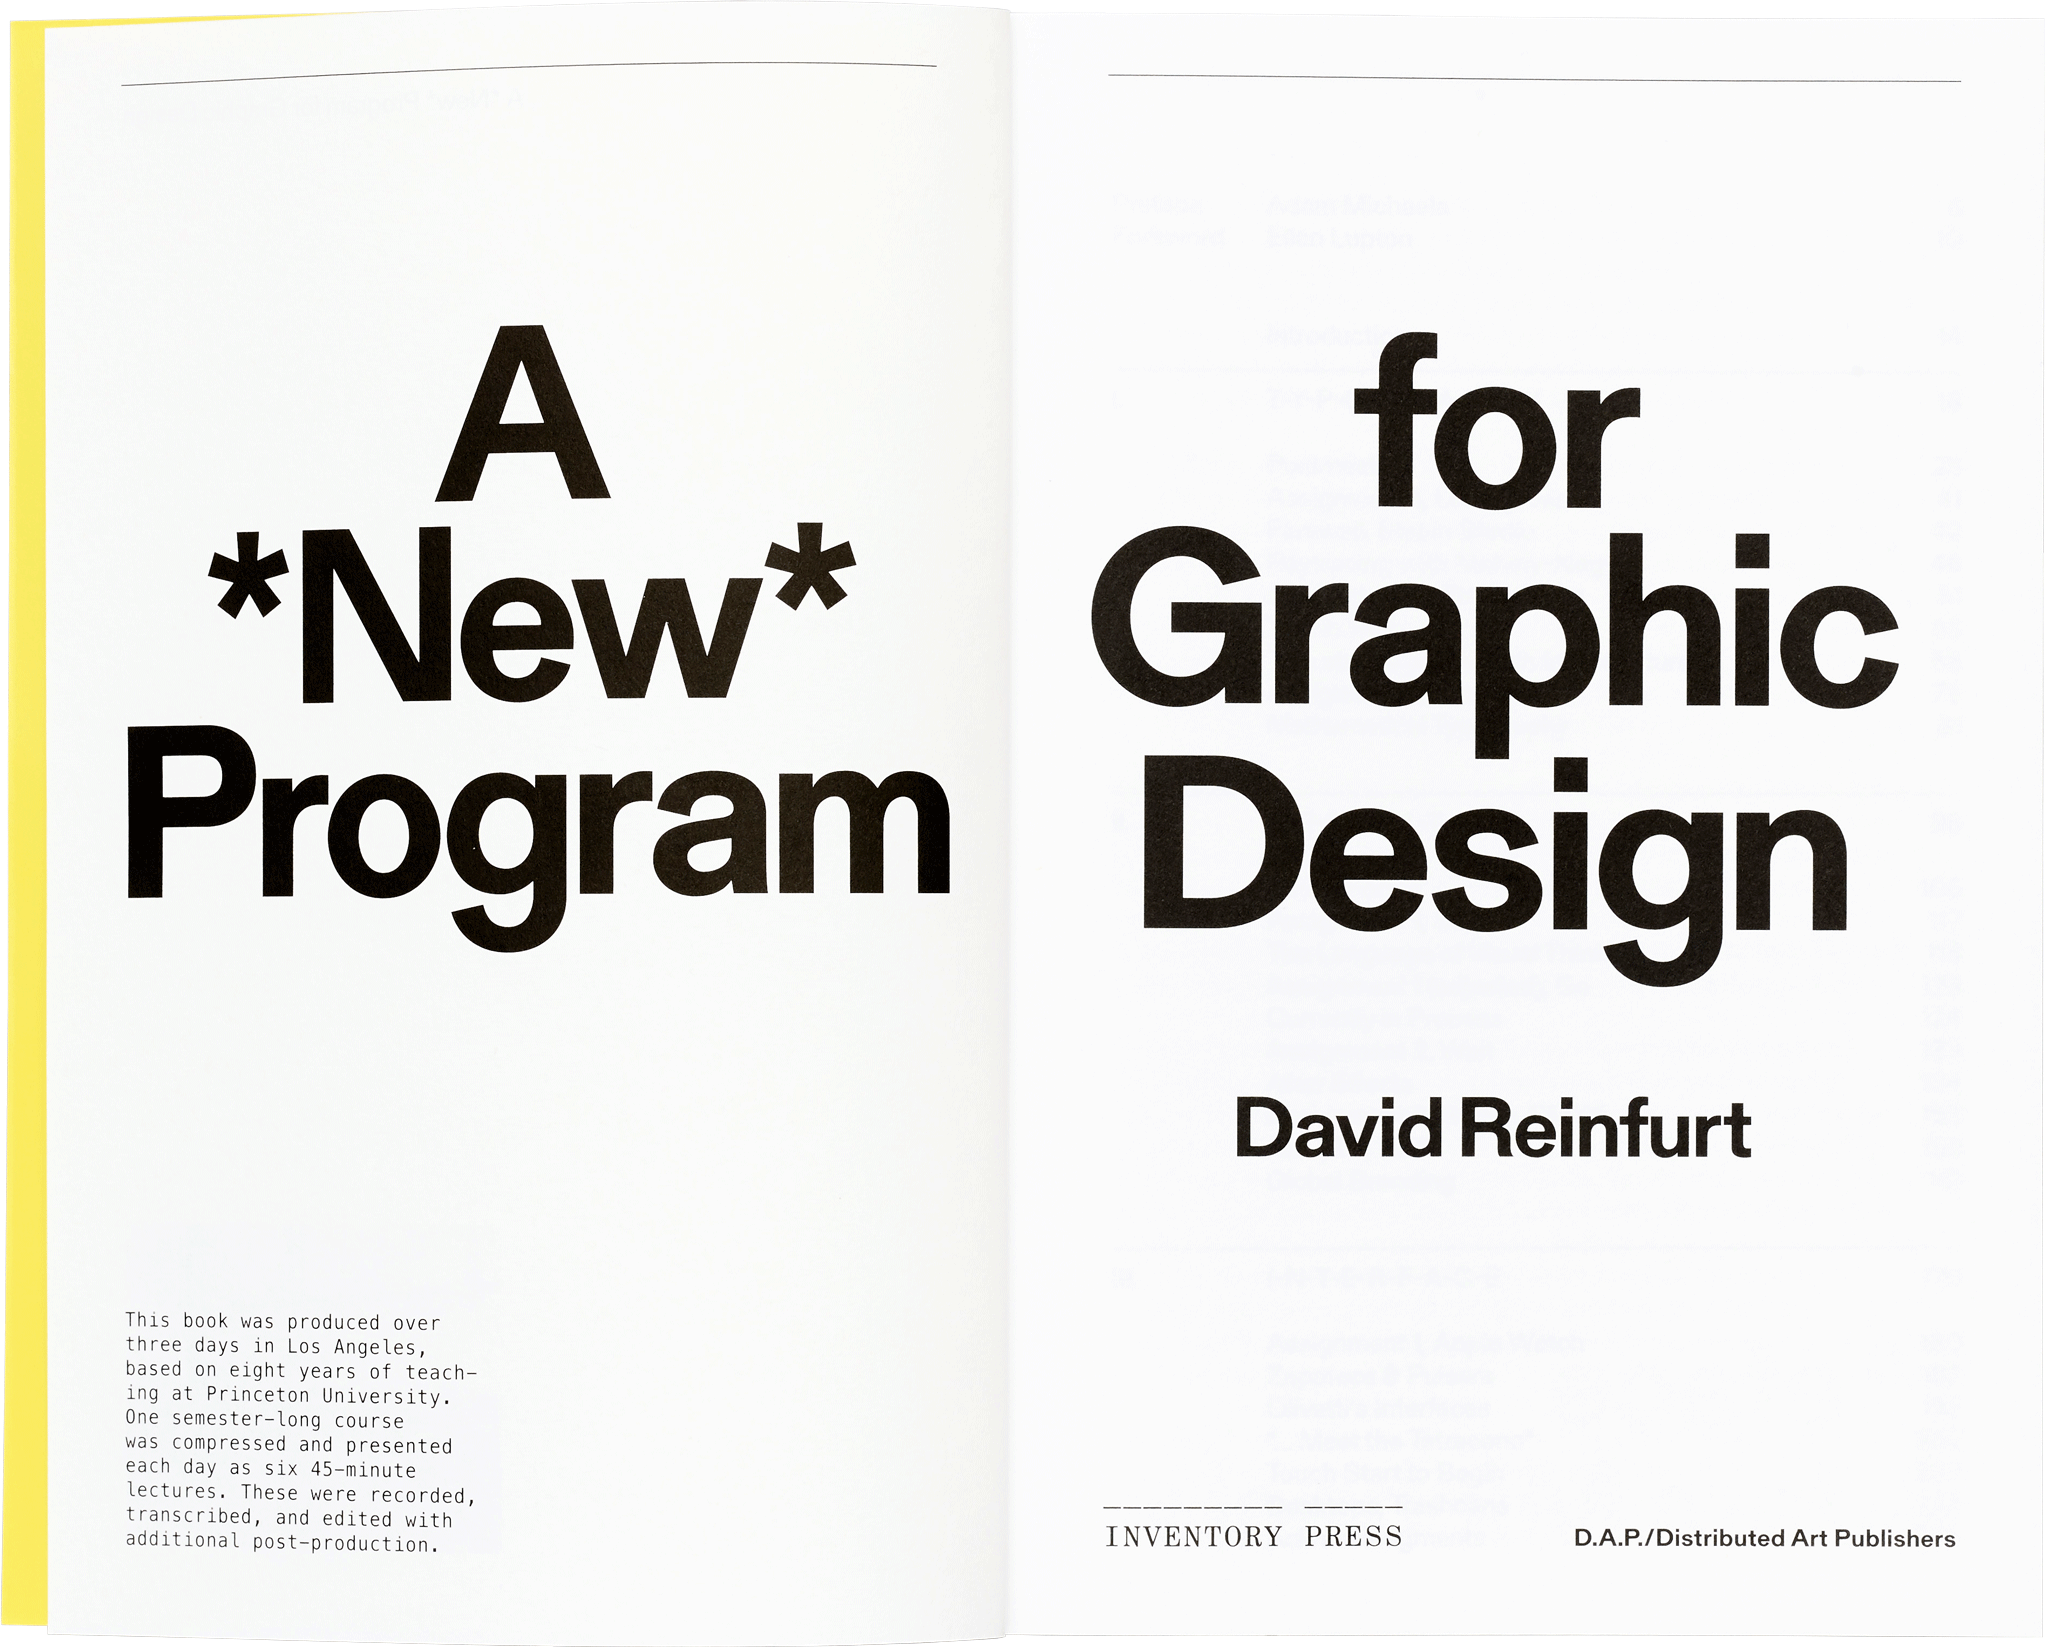 A *New* Program for Graphic Design spread